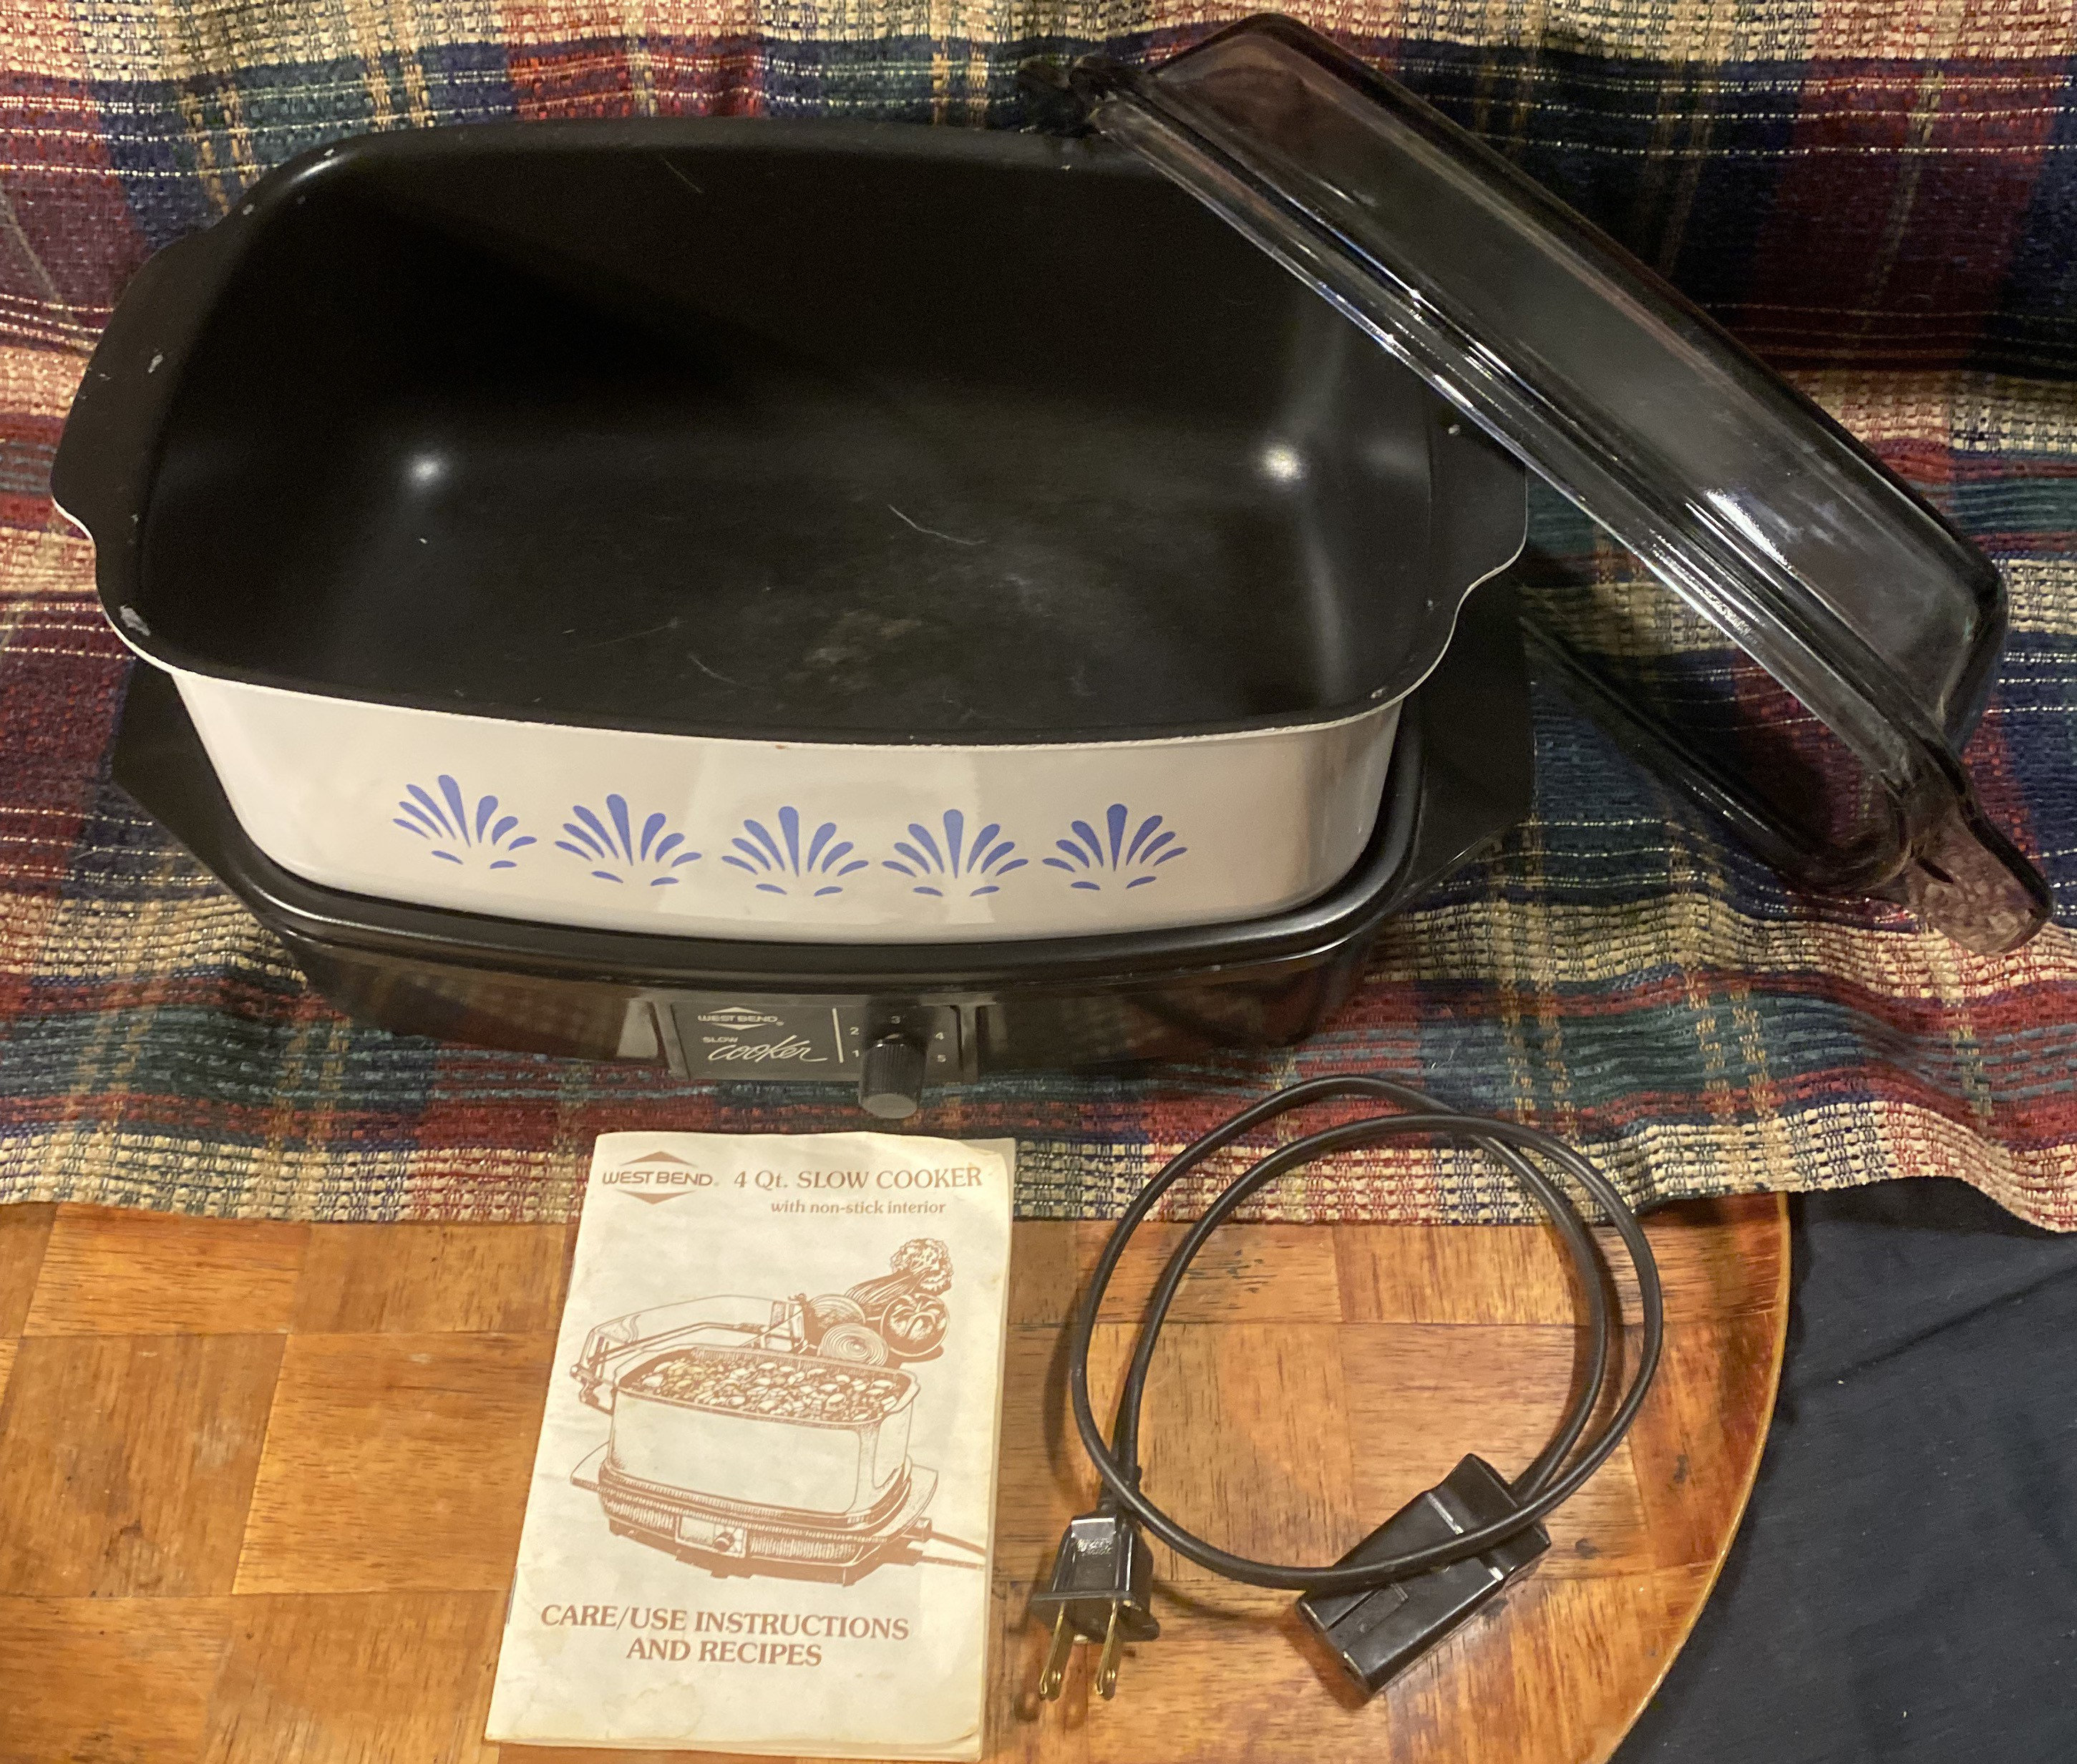 Vintage West Bend Slow Cooker Crock Pot Type 4 Quart for Sale in